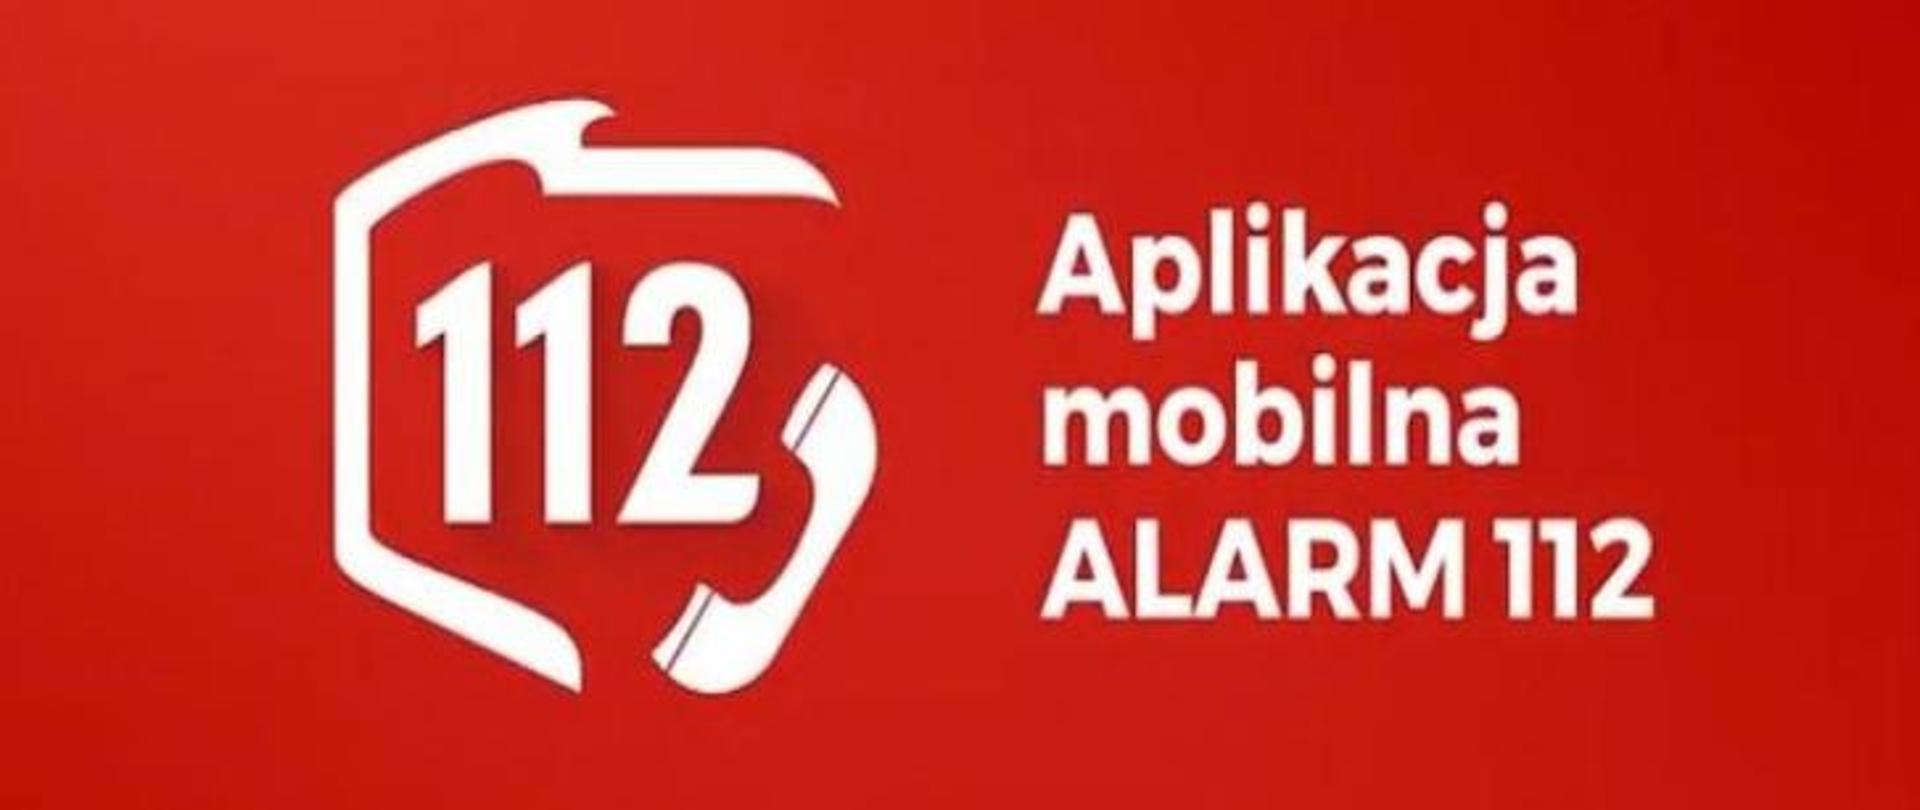 logo z napisem "Aplikacja mobilna ALARM112", kontury Polski a w środku napis z numerem 112